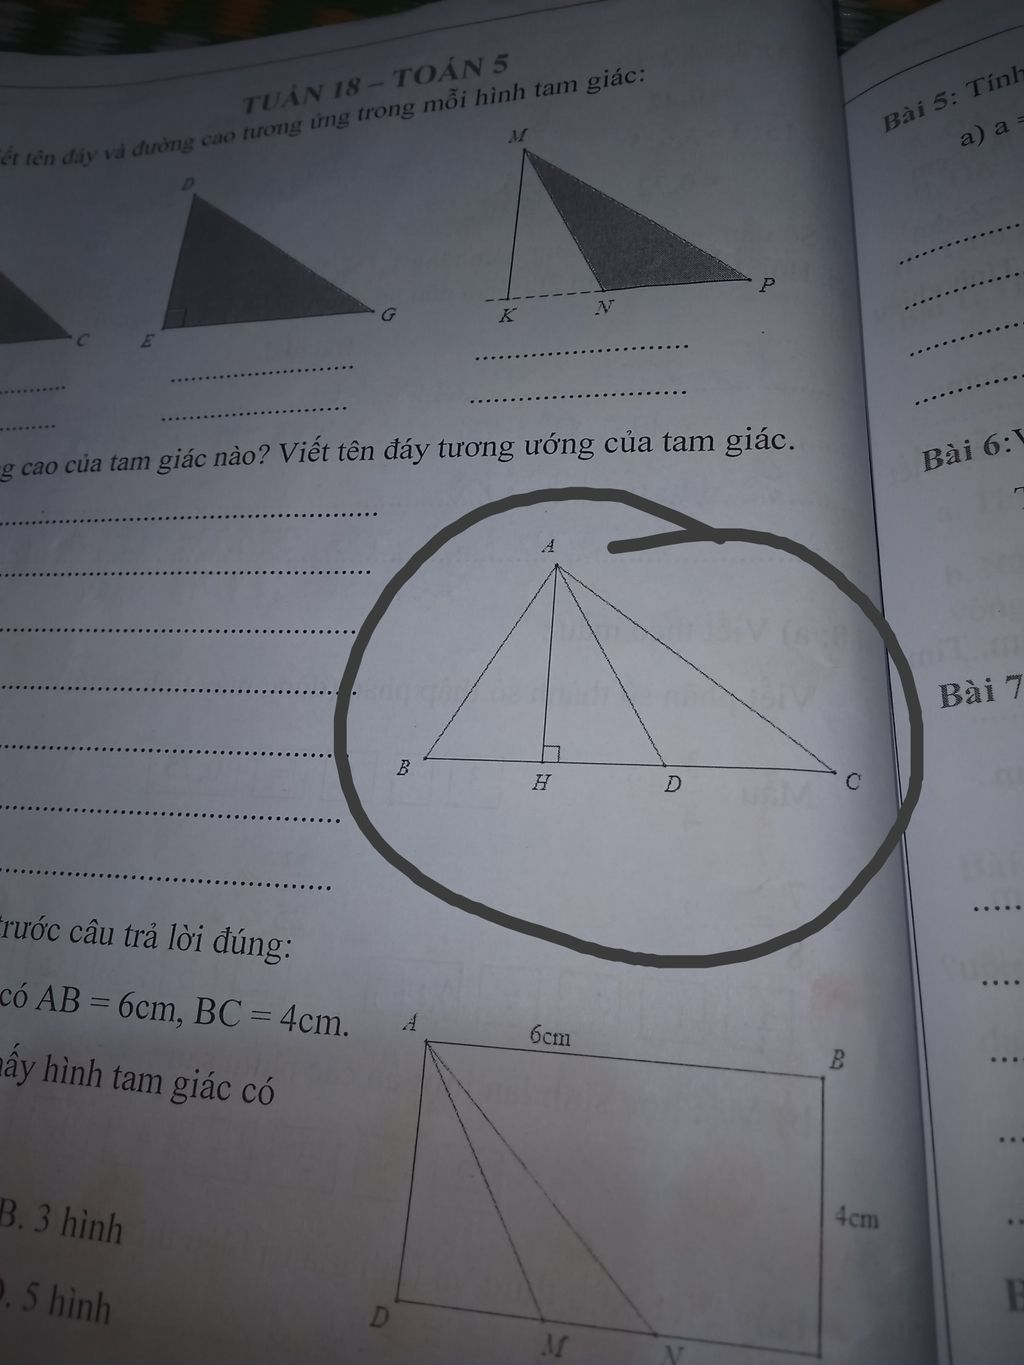 AH là đường cao của hình tam giác nào? 
